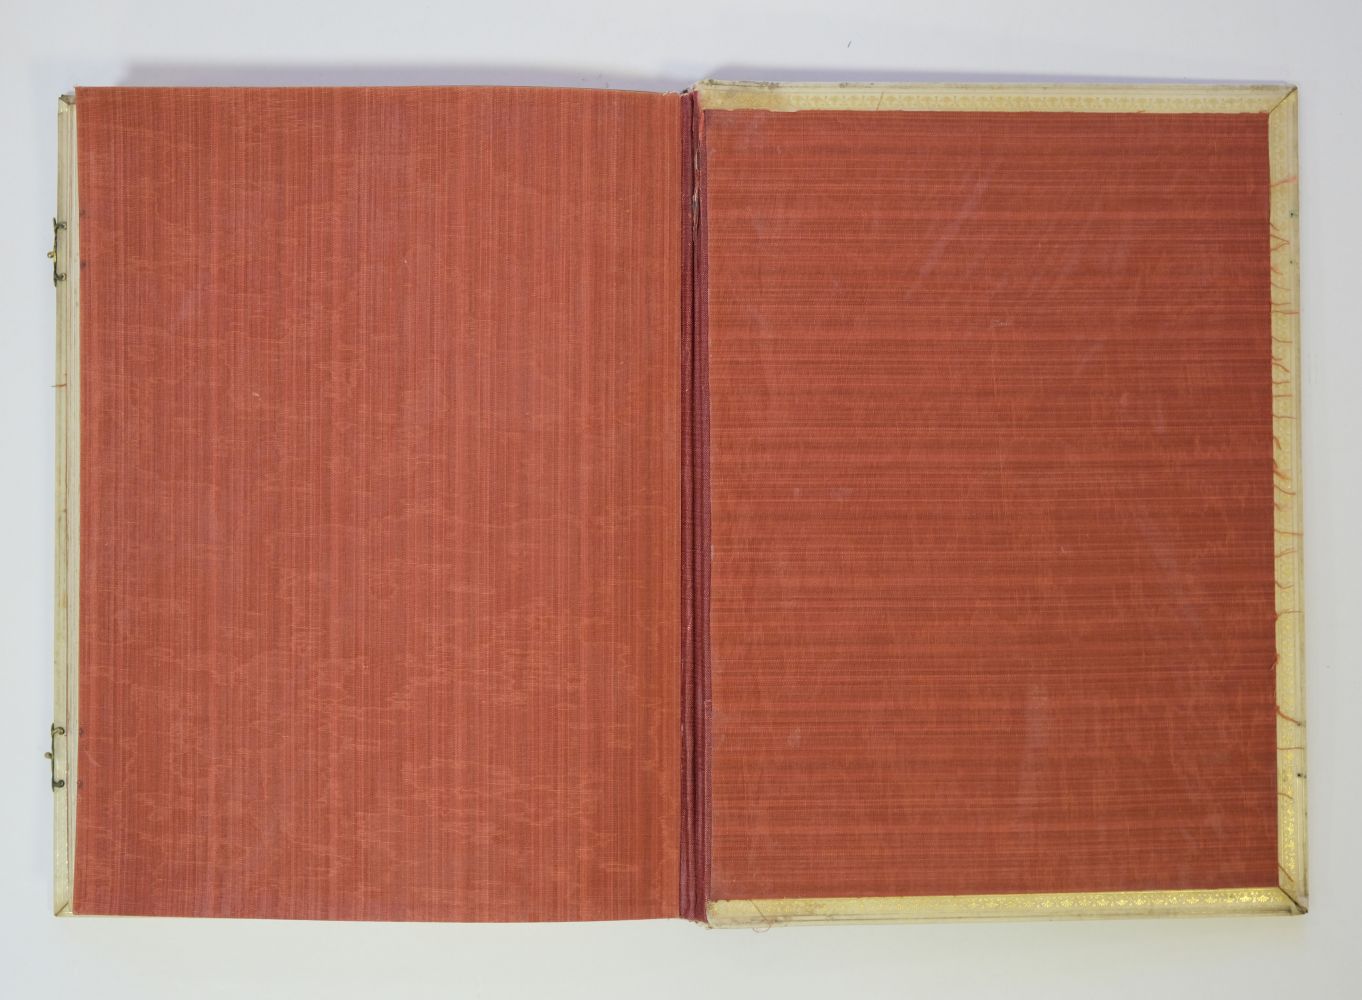 Sangorski & Sutcliffe Binding. Rubaiyat of Omar Khayyam, 1911 - Image 15 of 15